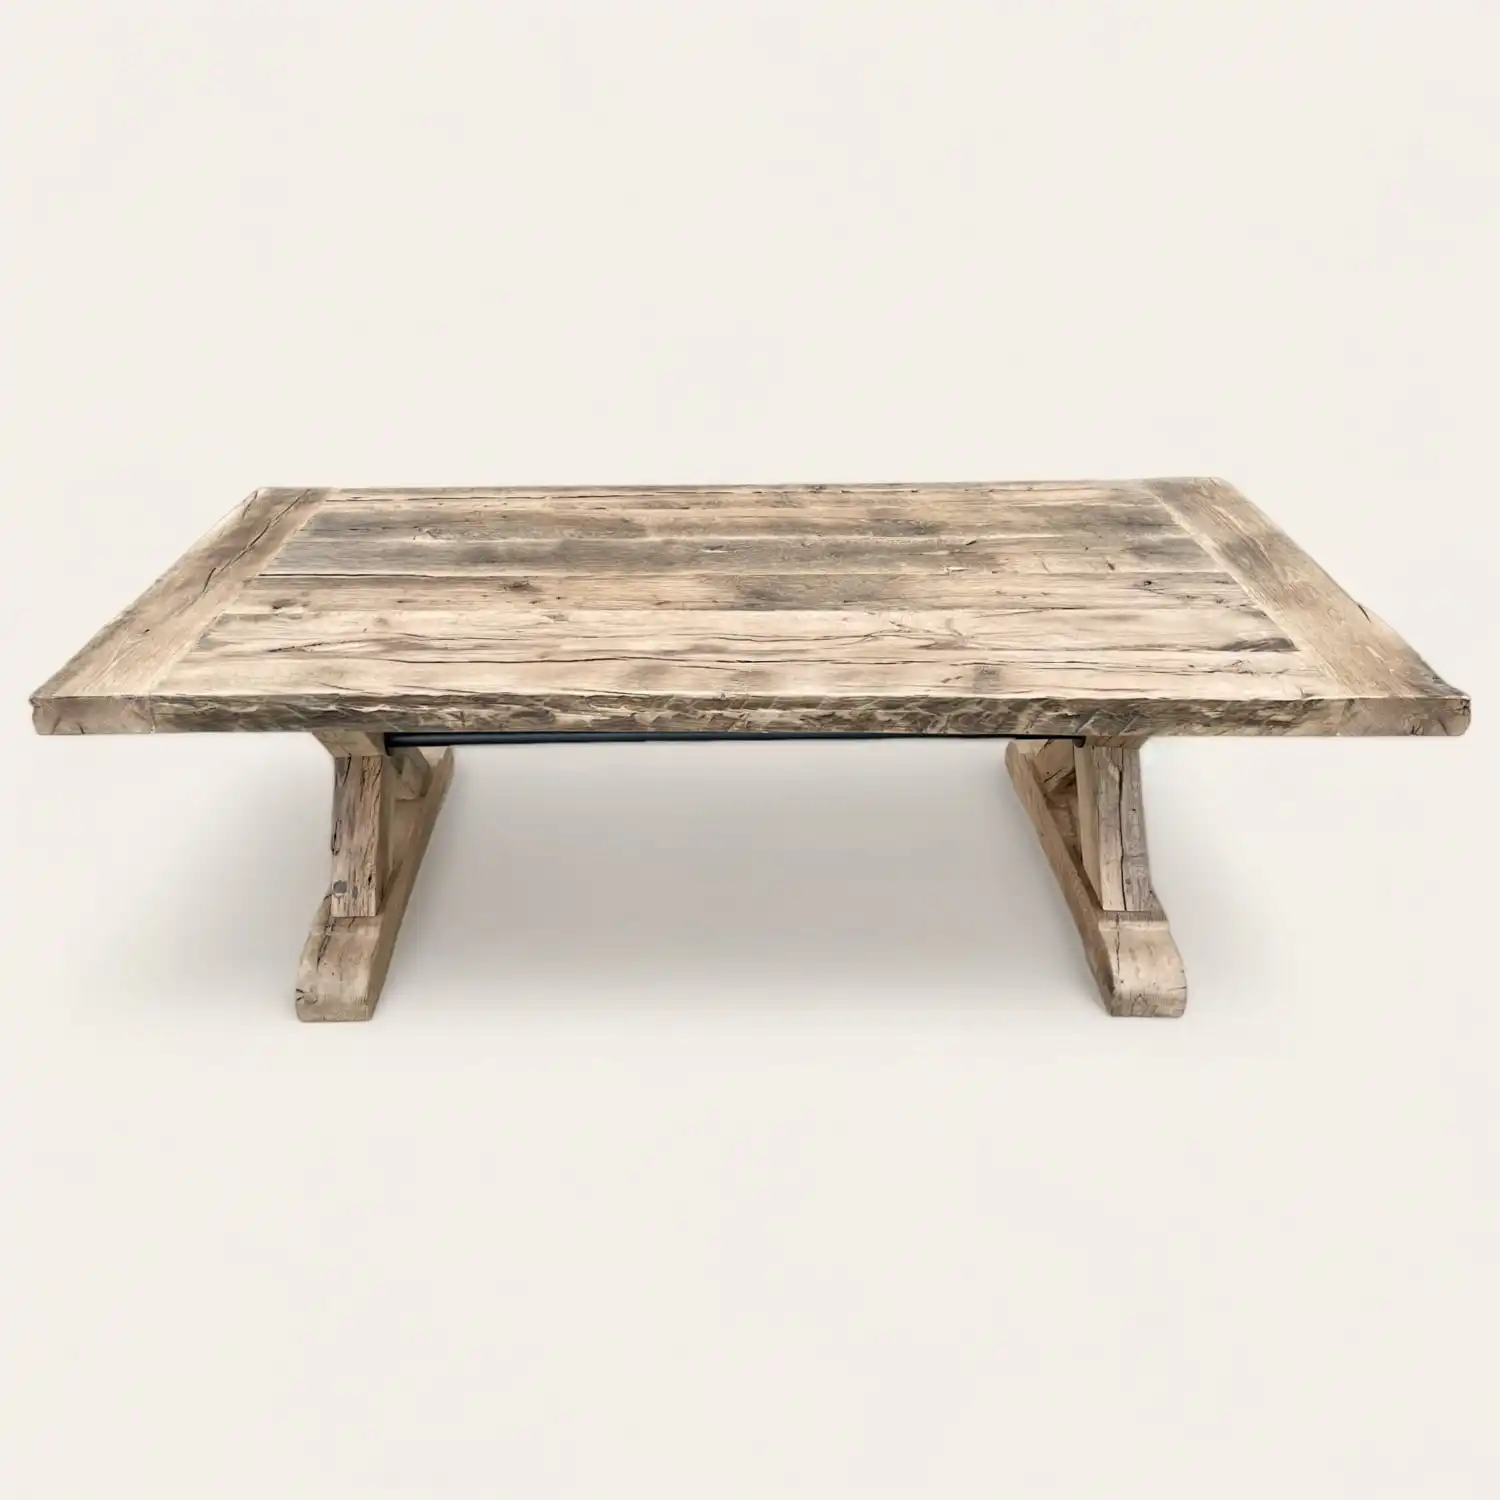  Table de salon de style fermette, fabriquée en bois ancien aux textures riches et nuances naturelles, soutenue par deux pieds robustes, évoquant une esthétique rustique et un artisanat authentique. 